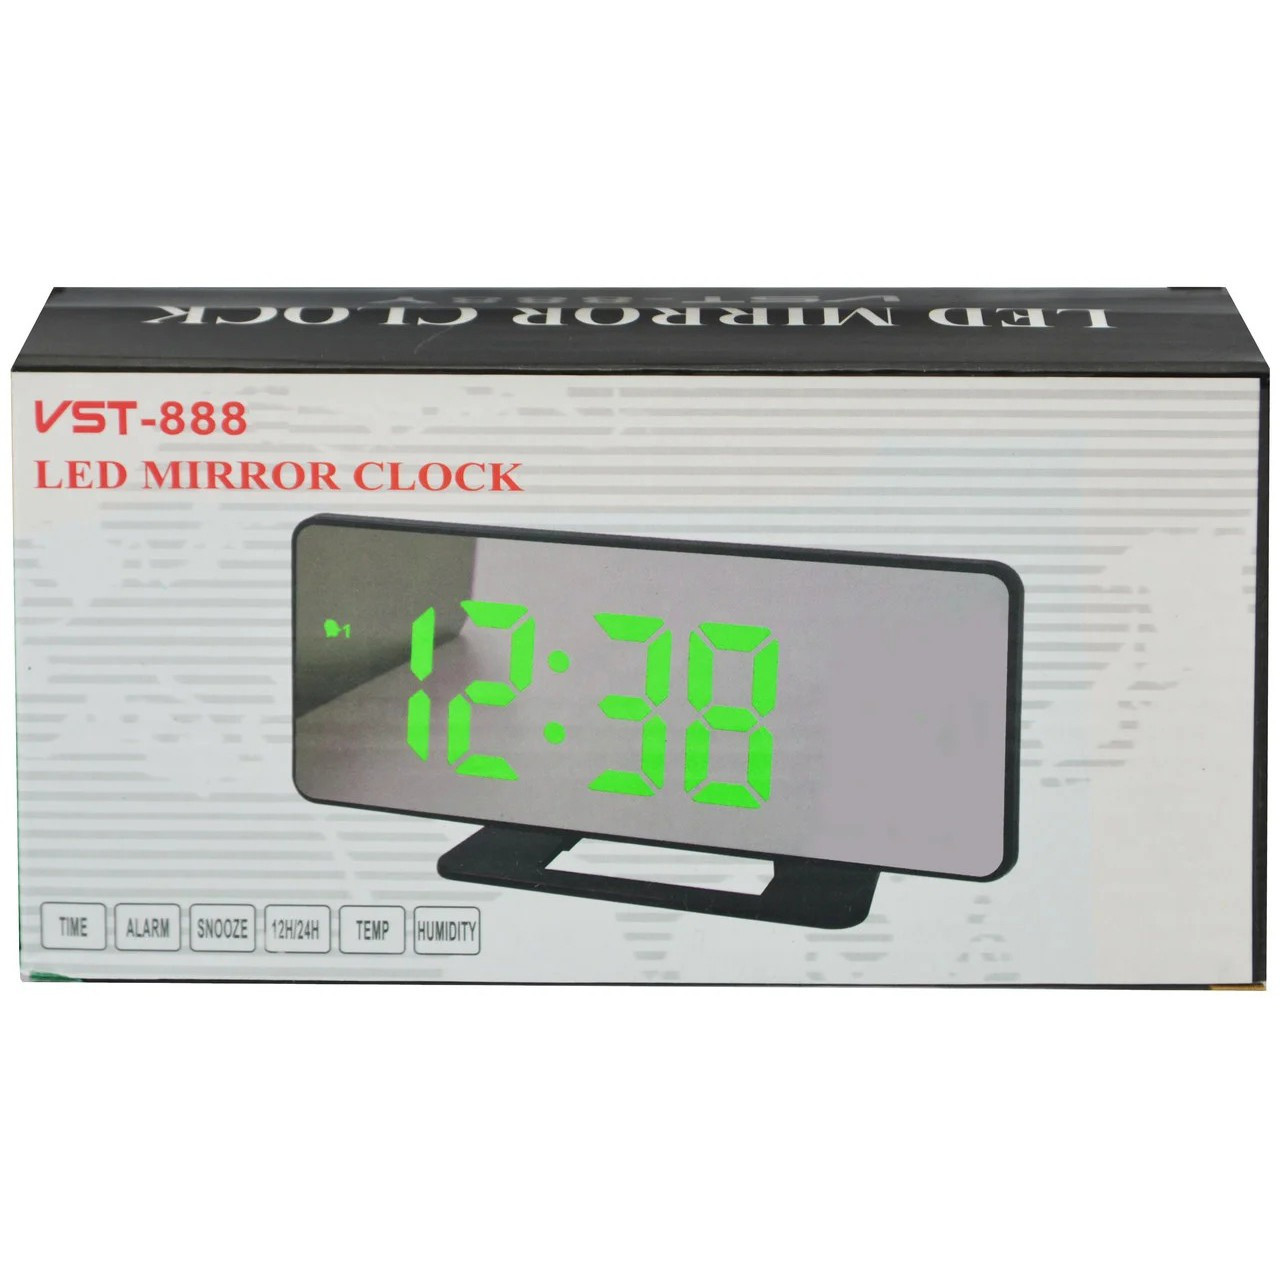 Vst часы электронные инструкция настройки. Часы VST 888. Часы настольные VST 888y. Часы будильник электронные настольные VST-888 зеркальные. Блок питания для часов VST 888.